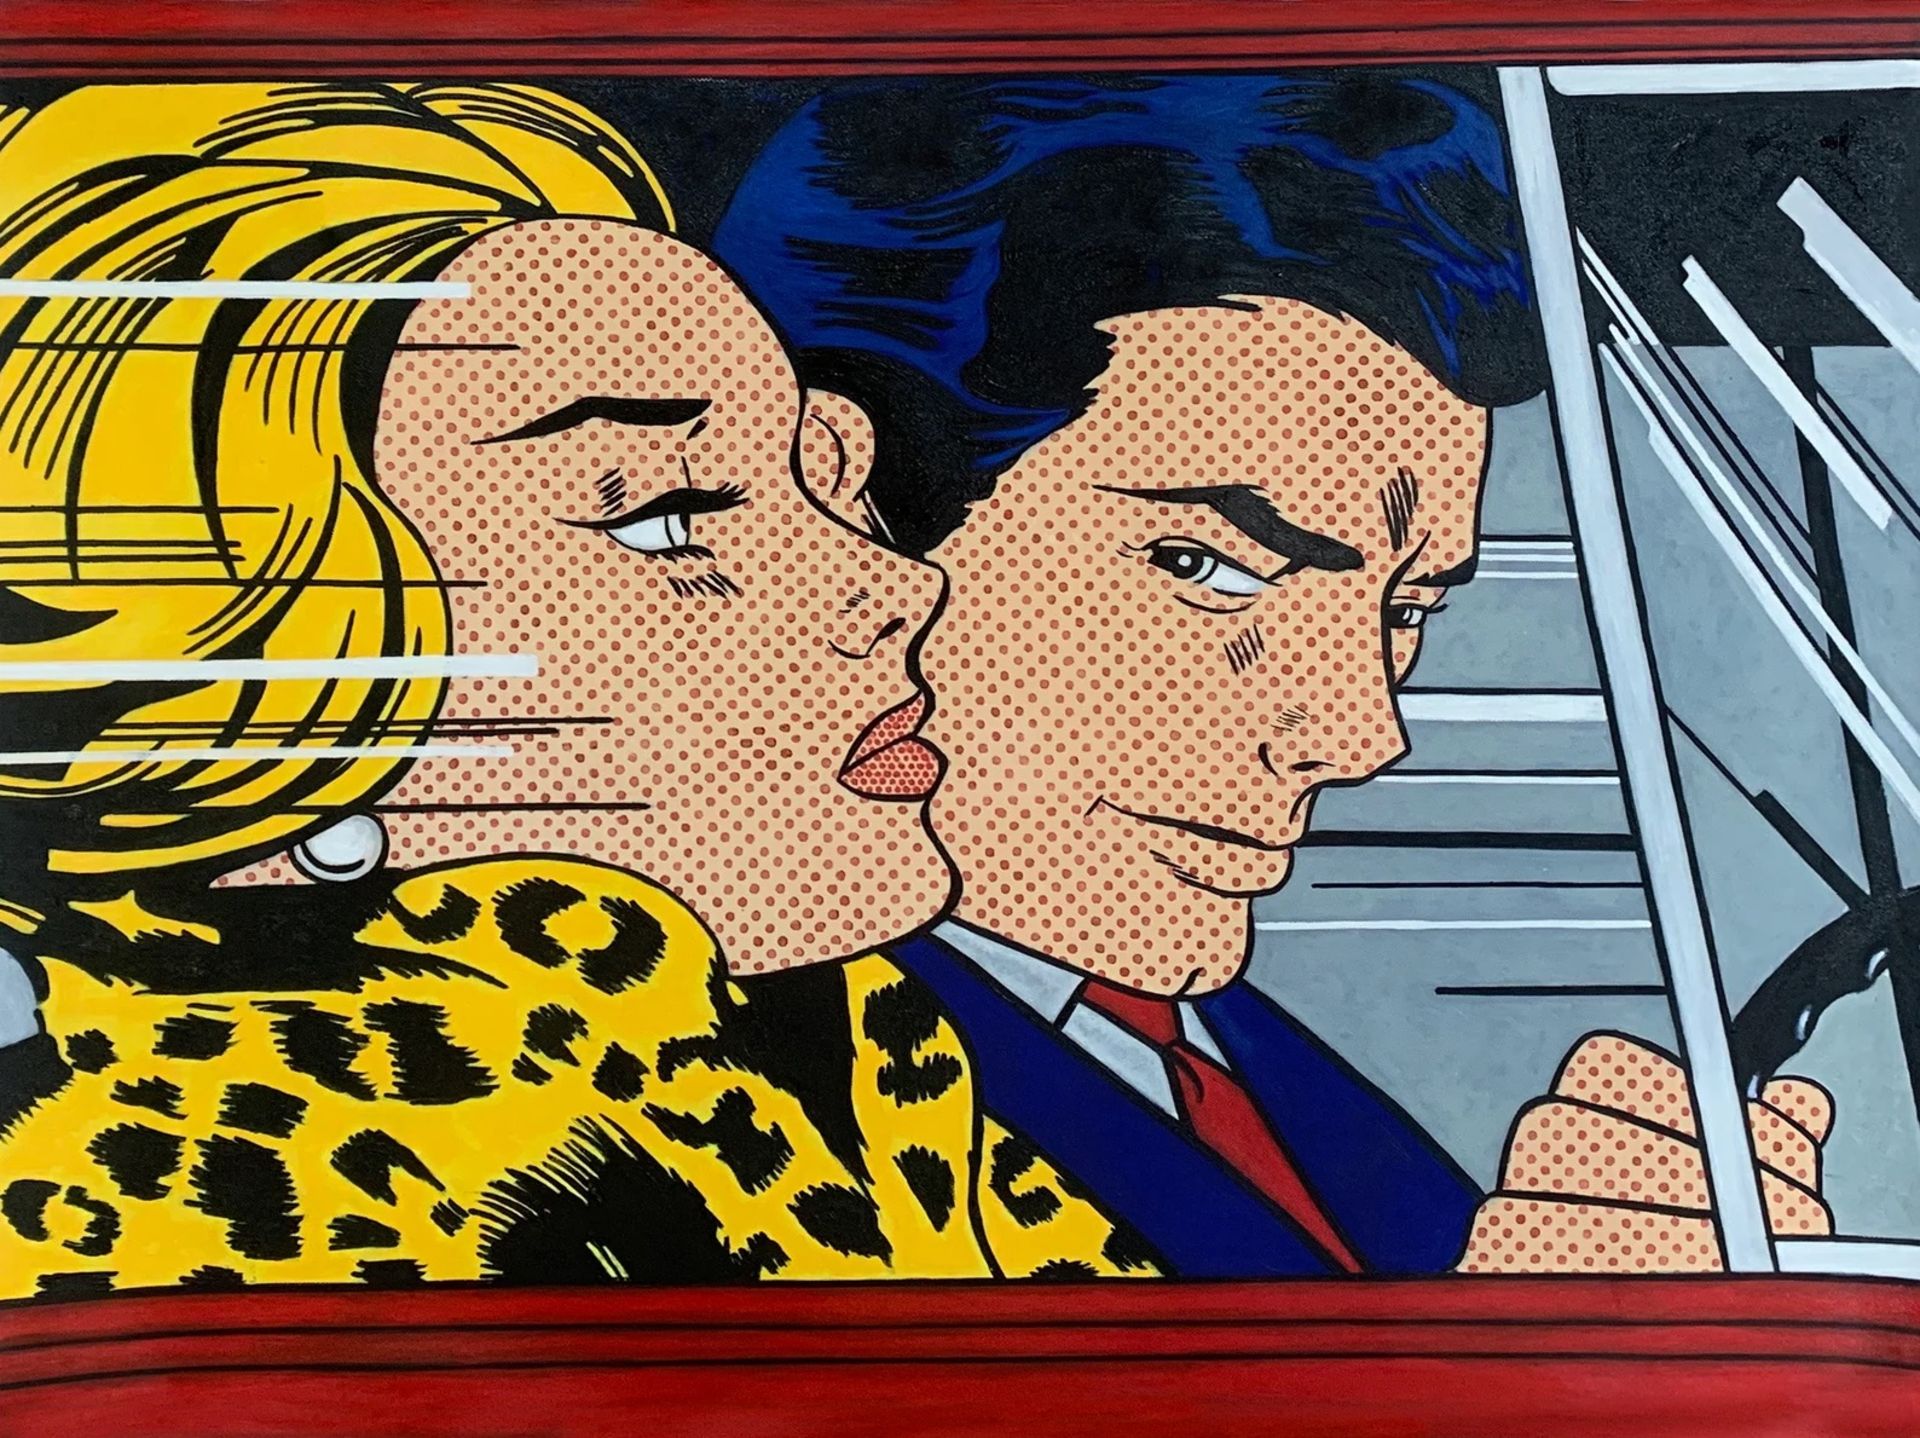 Roy Lichtenstein "In the Car, 1963" Oil Painting